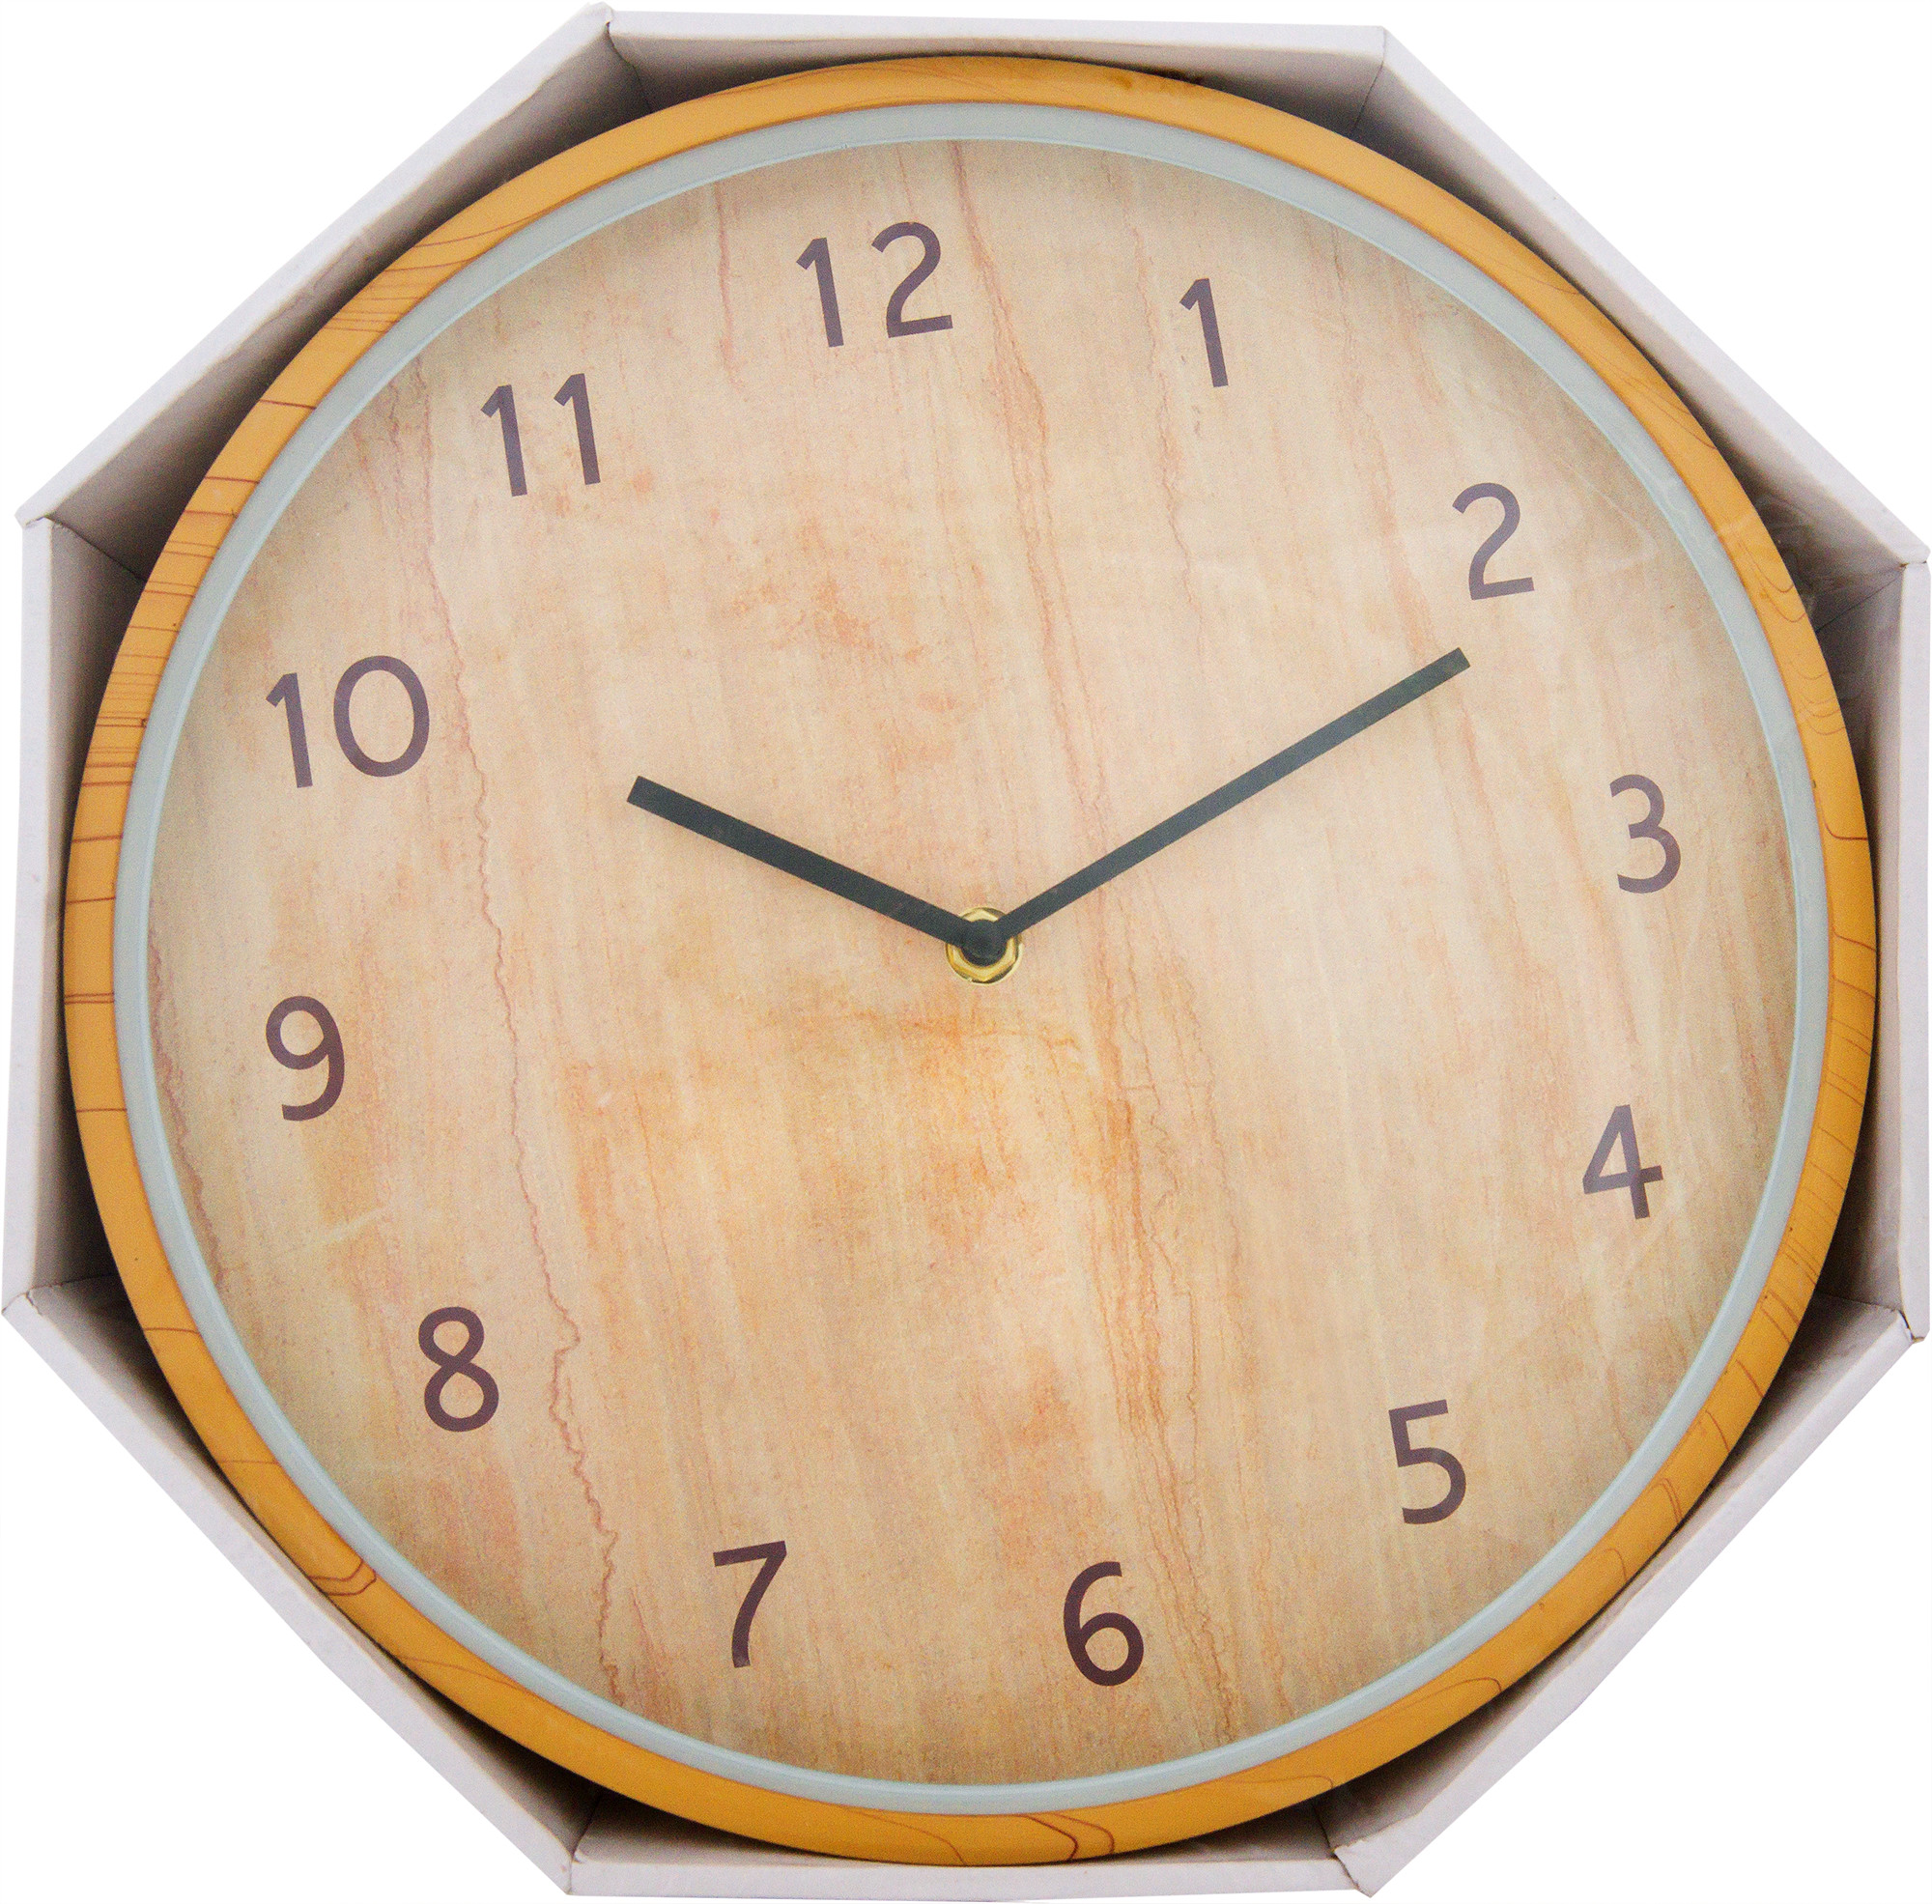 Часы настенные 30 см. Часы кварцевые клен Танзау. Часы настенные. Интерьерные часы. Часы настенные кварцевые.